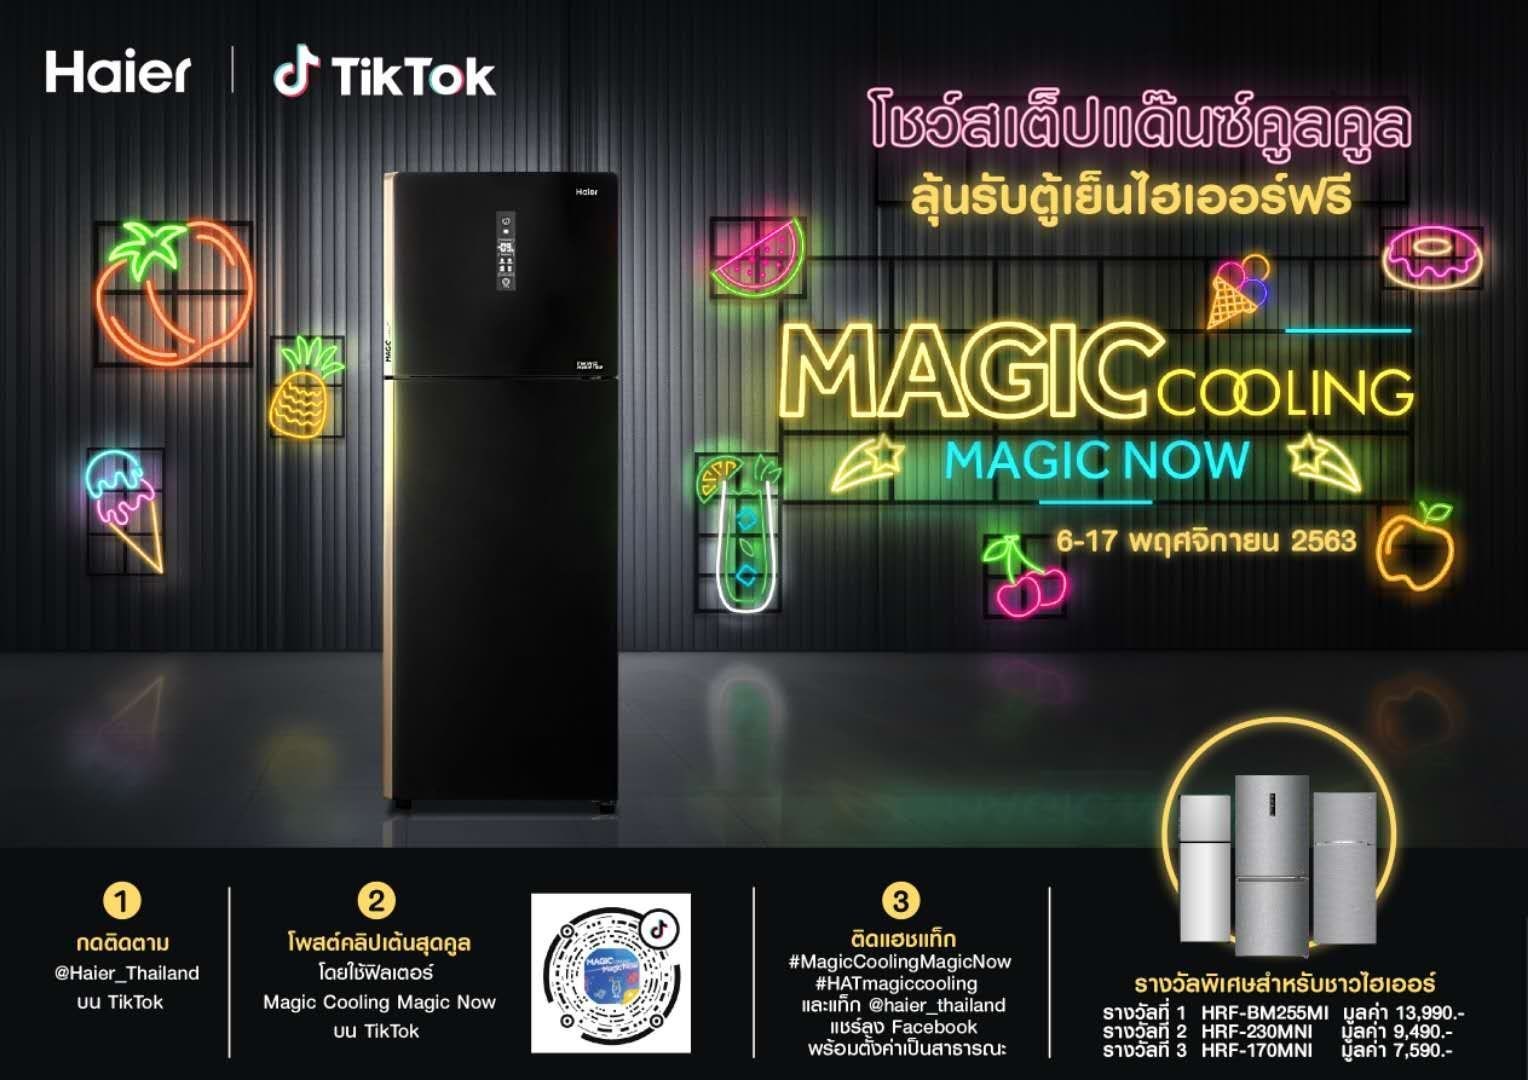 ไฮเออร์ สมาร์ท โฮม เปิดชาเลนจ์ Magic Cooling, Magic Now Challenge รวมพลังคนรุ่นใหม่บน TikTok